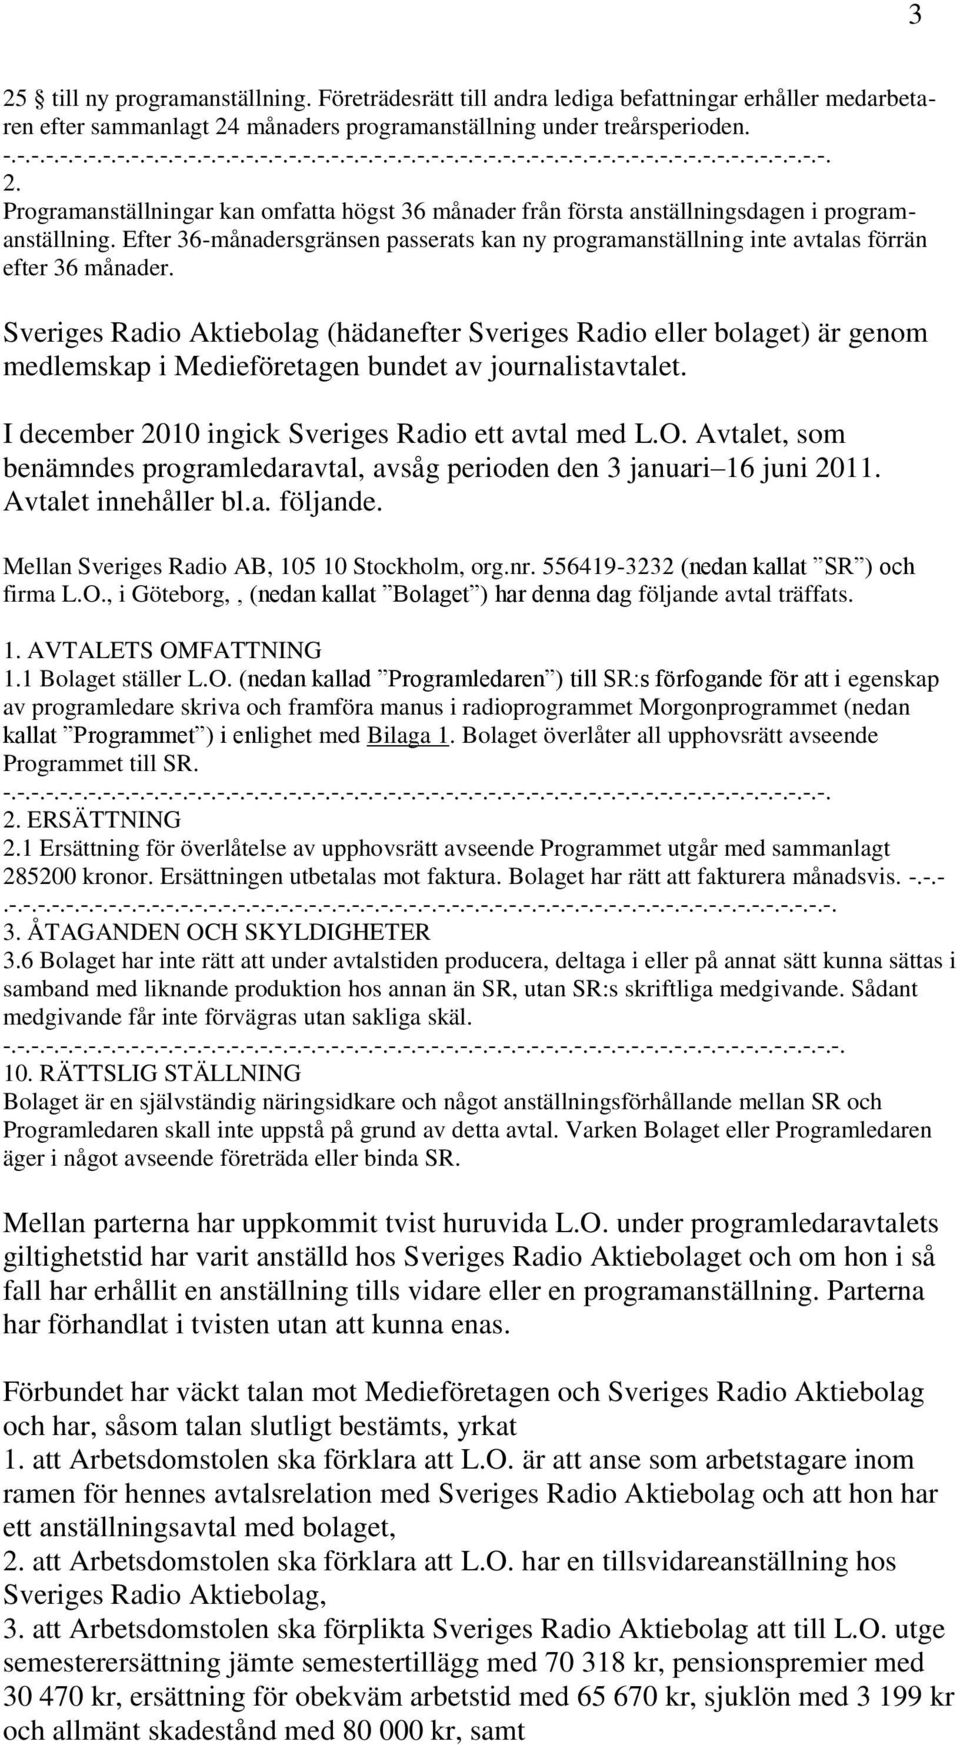 Sveriges Radio Aktiebolag (hädanefter Sveriges Radio eller bolaget) är genom medlemskap i Medieföretagen bundet av journalistavtalet. I december 2010 ingick Sveriges Radio ett avtal med L.O.